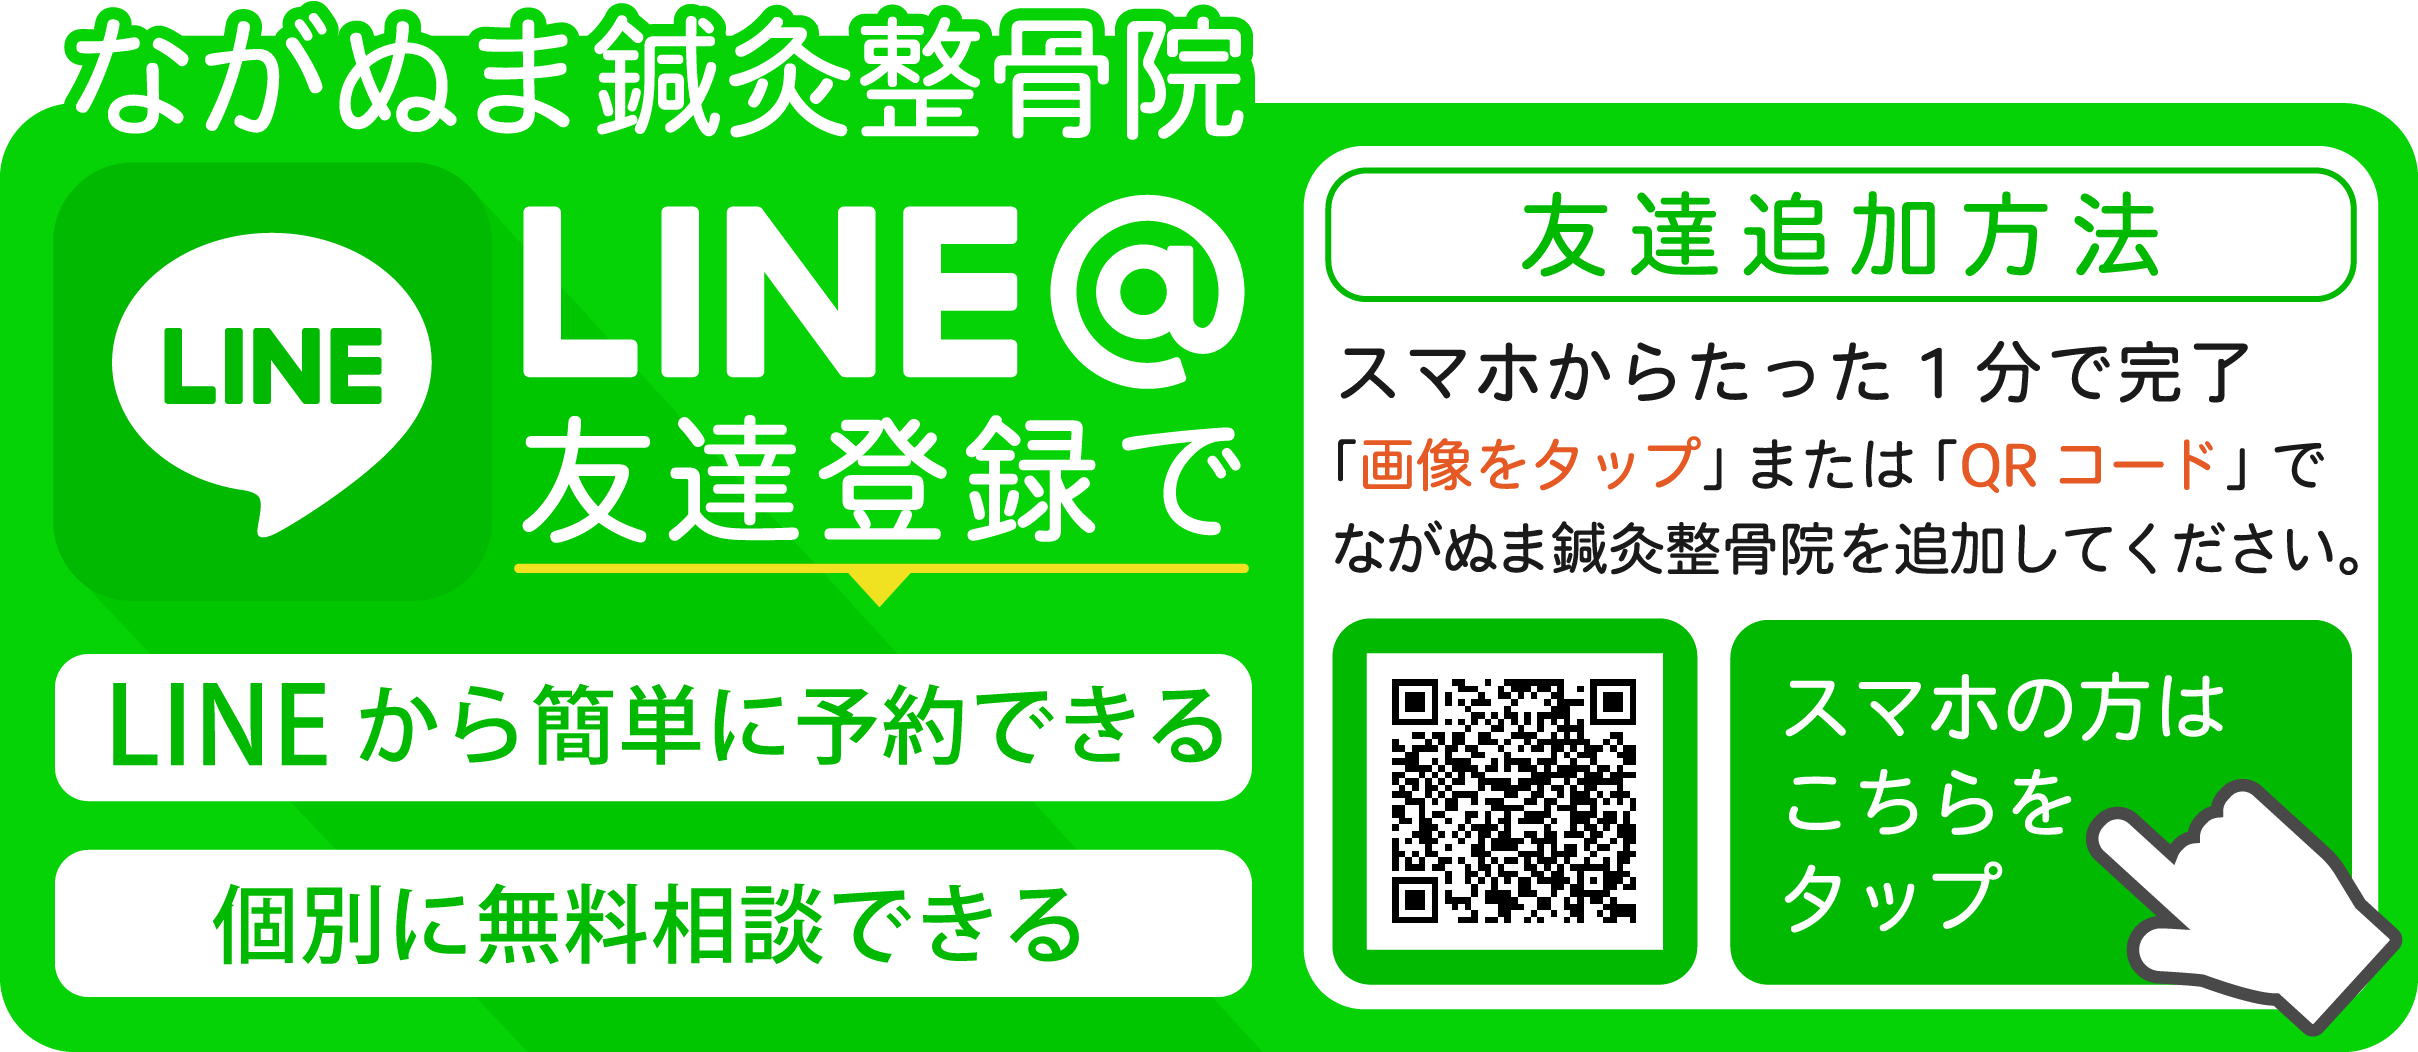 LINE@友達登録方法